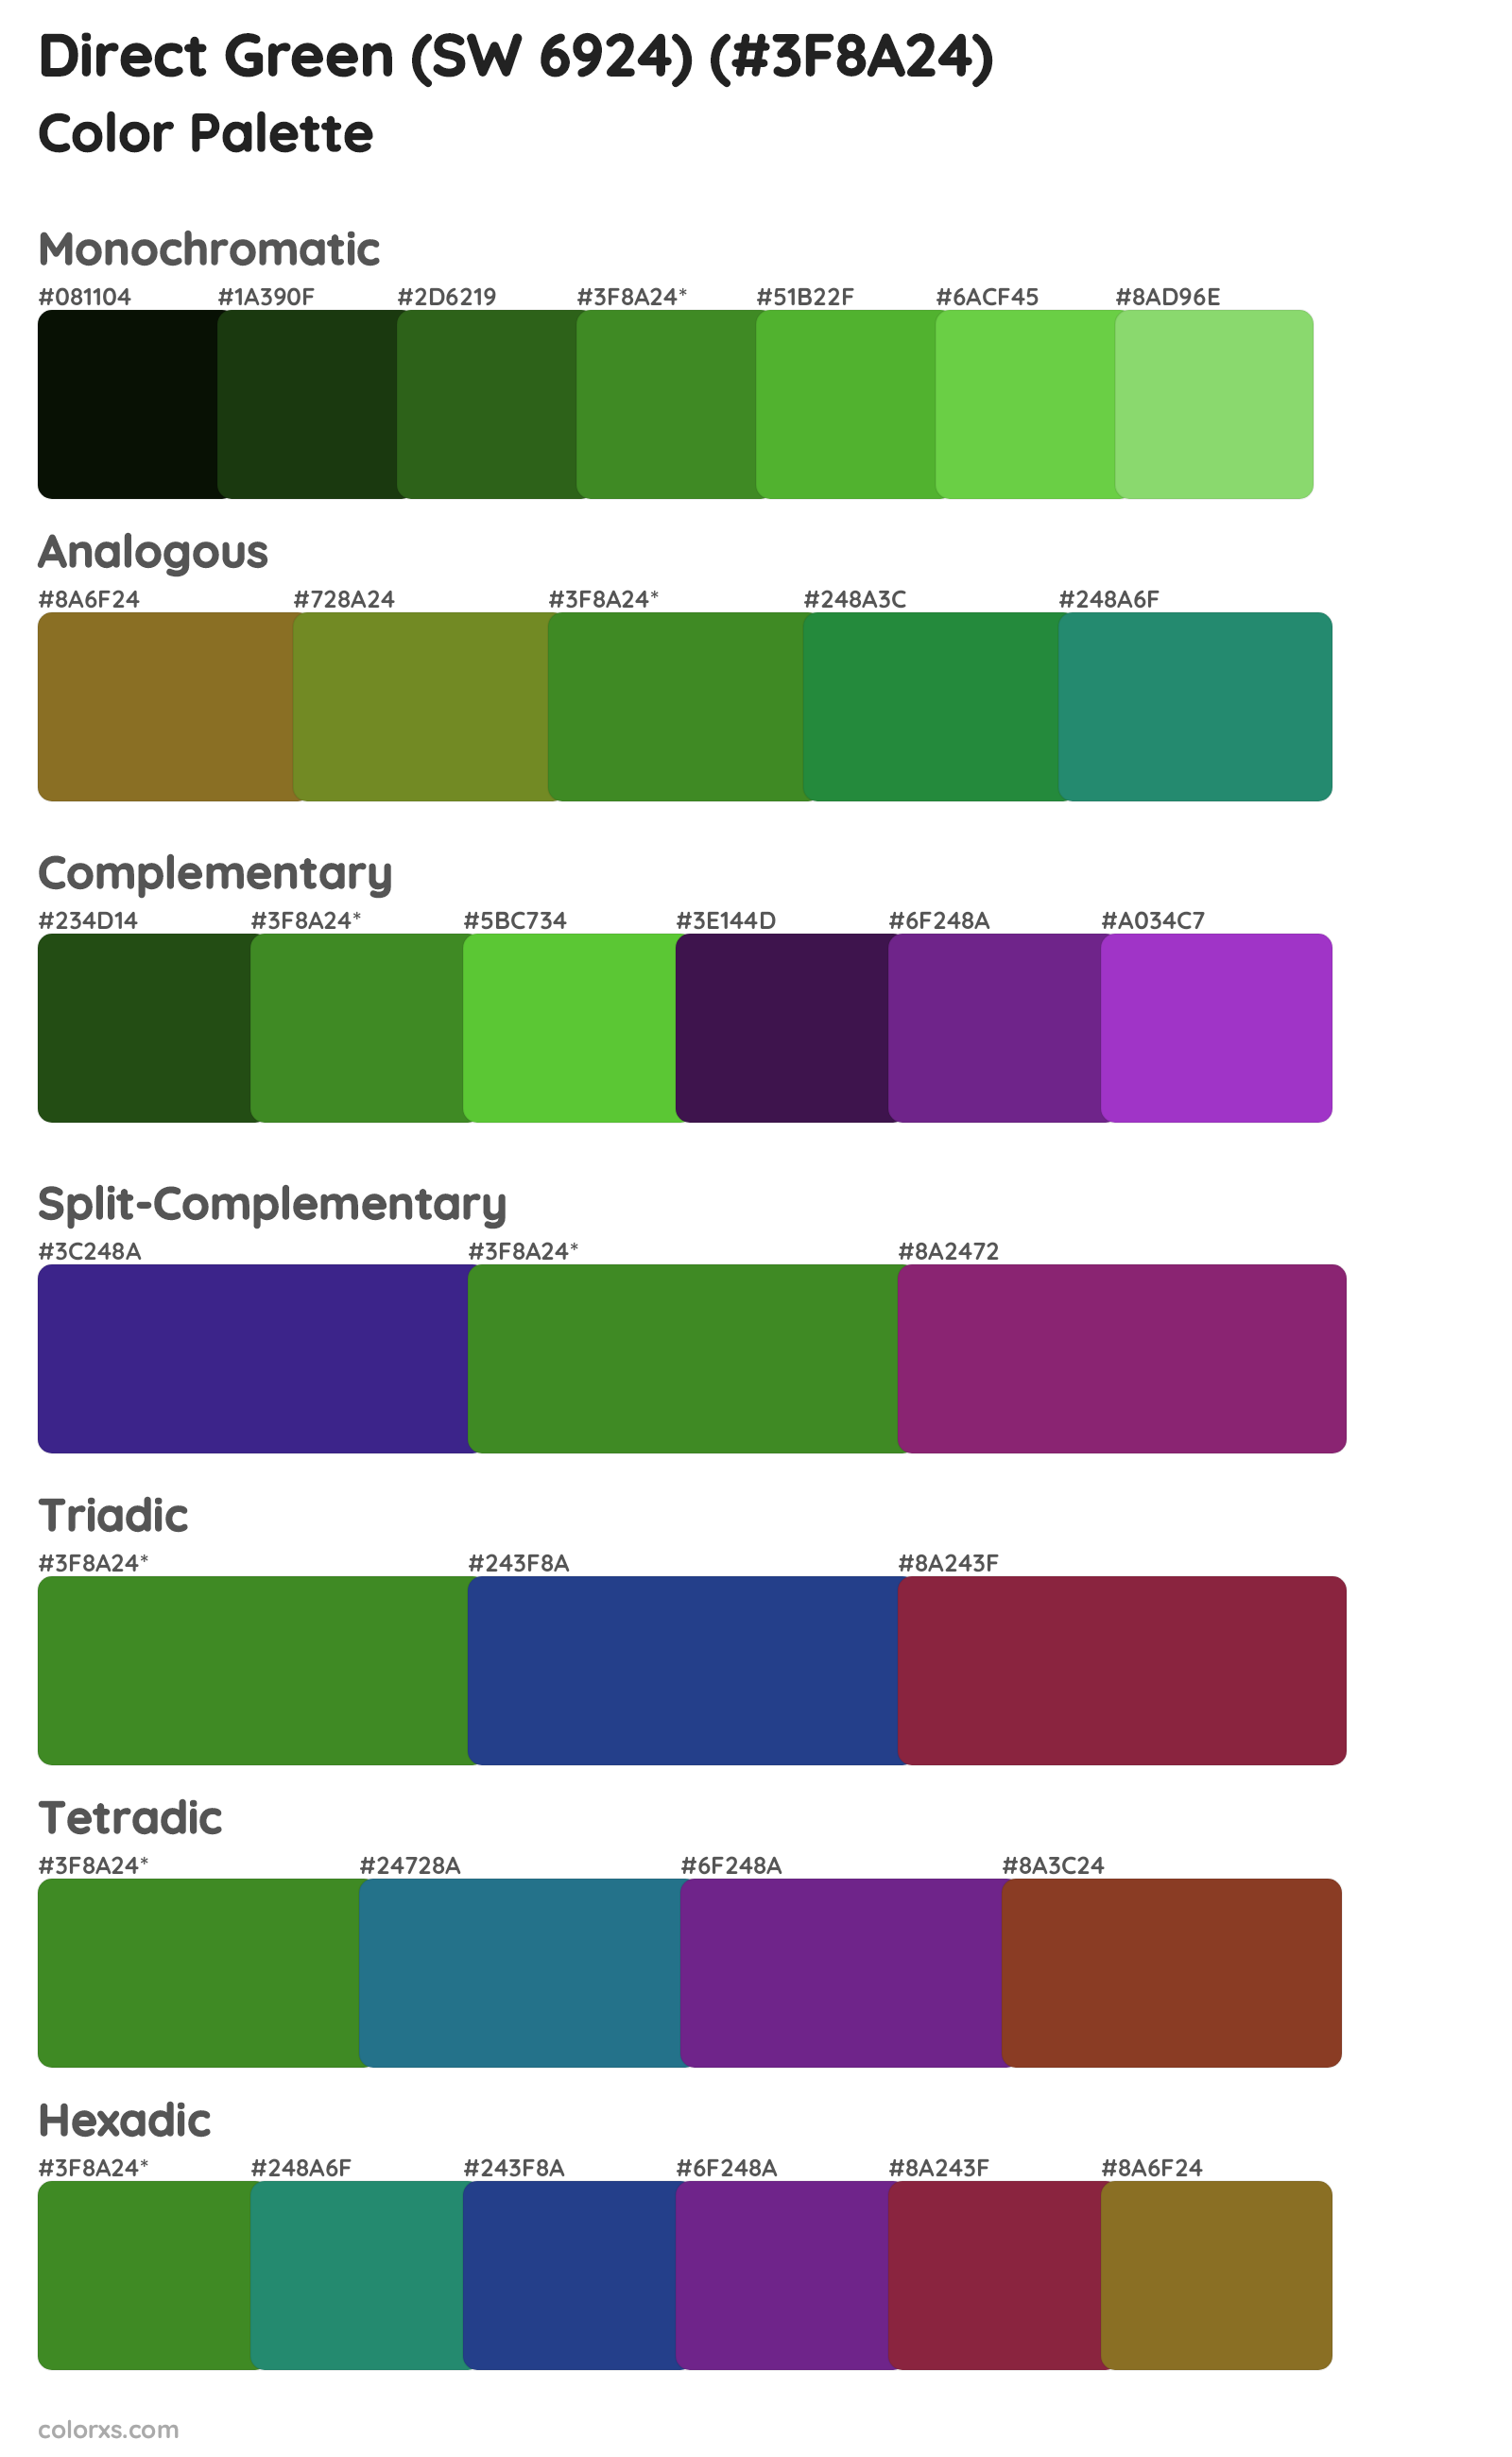 Direct Green (SW 6924) Color Scheme Palettes